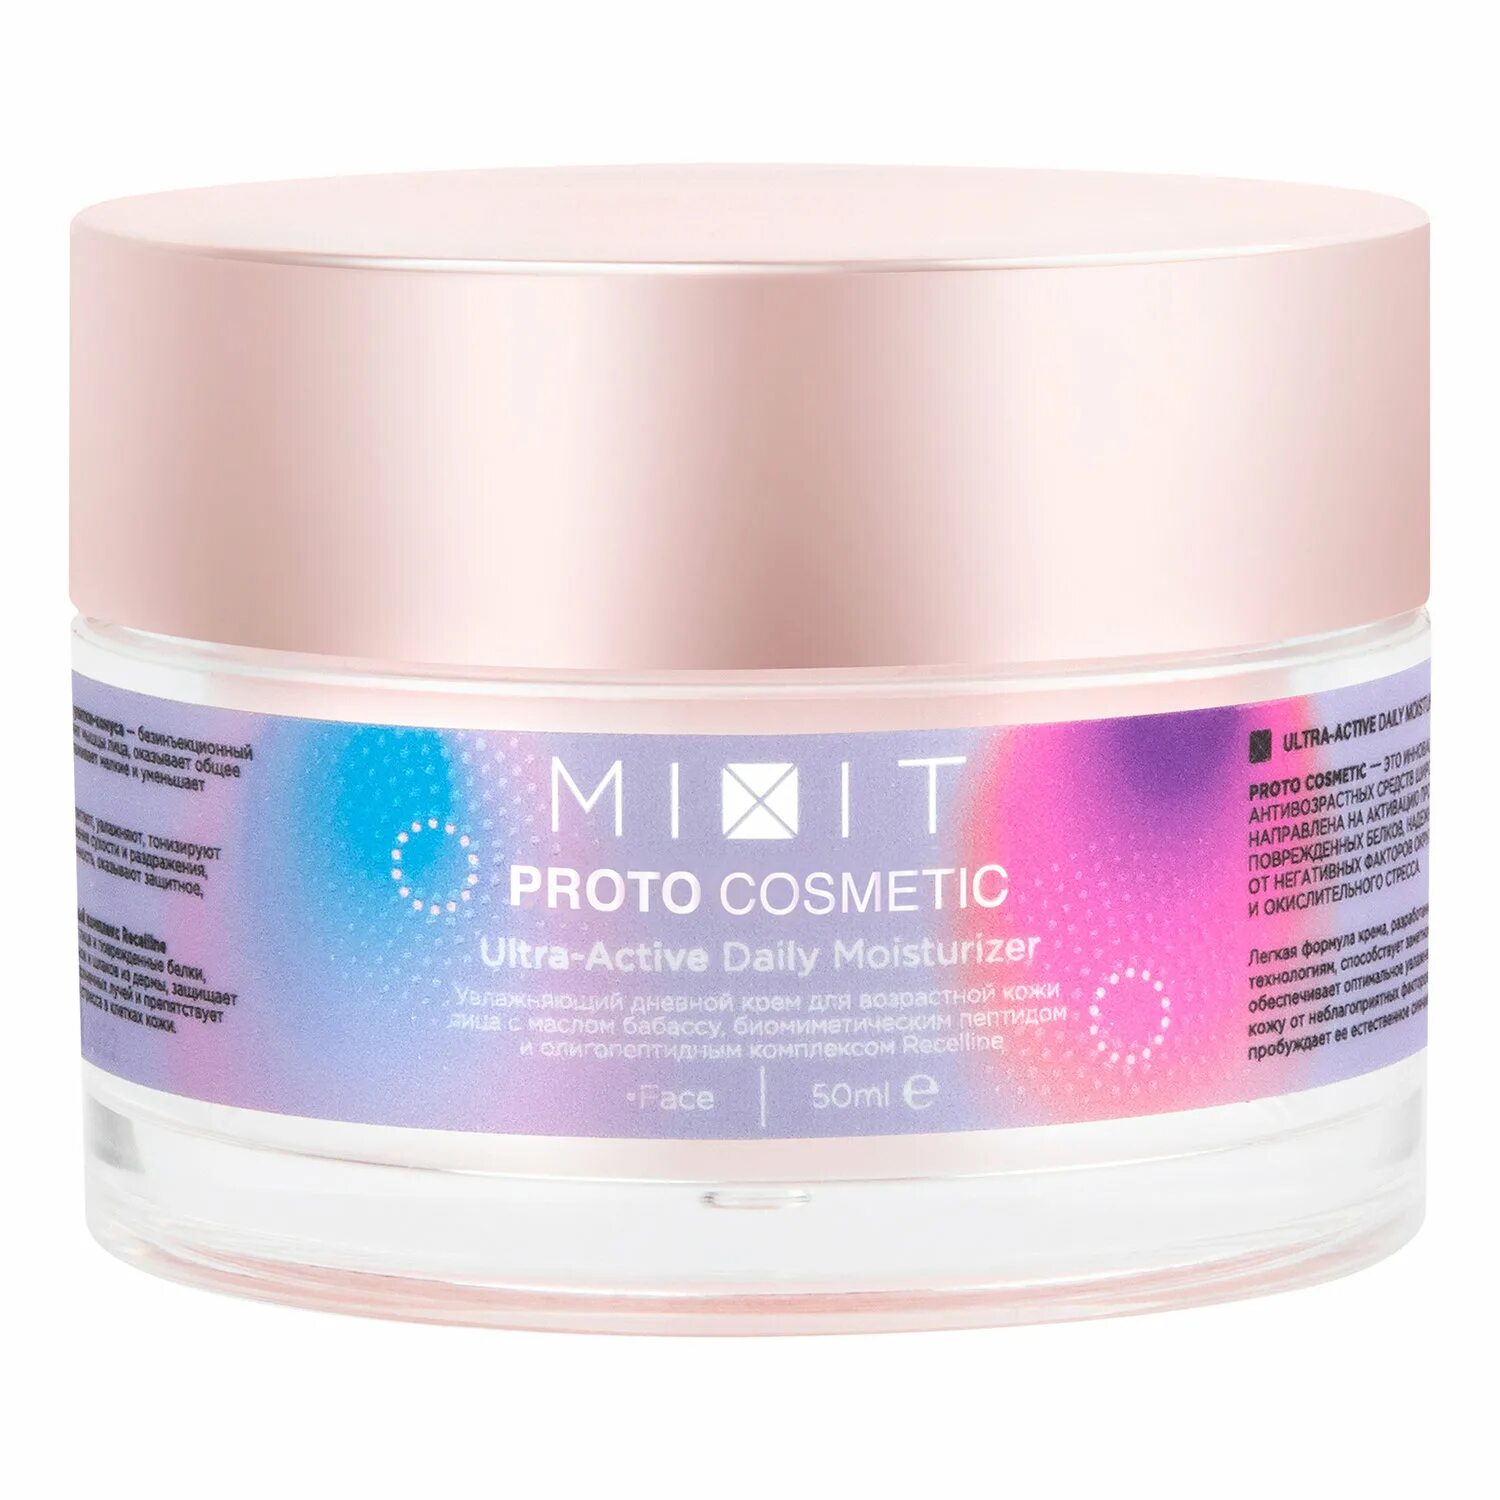 Mixit protocosmetic дневной крем увлажняющий для возрастной кожи 50. Proto Cosmetic Ultra-Active Daily Moisturizer. Mixit Proto Cosmetic. Mixit Proto Cosmetic крем дневной. Ultra active